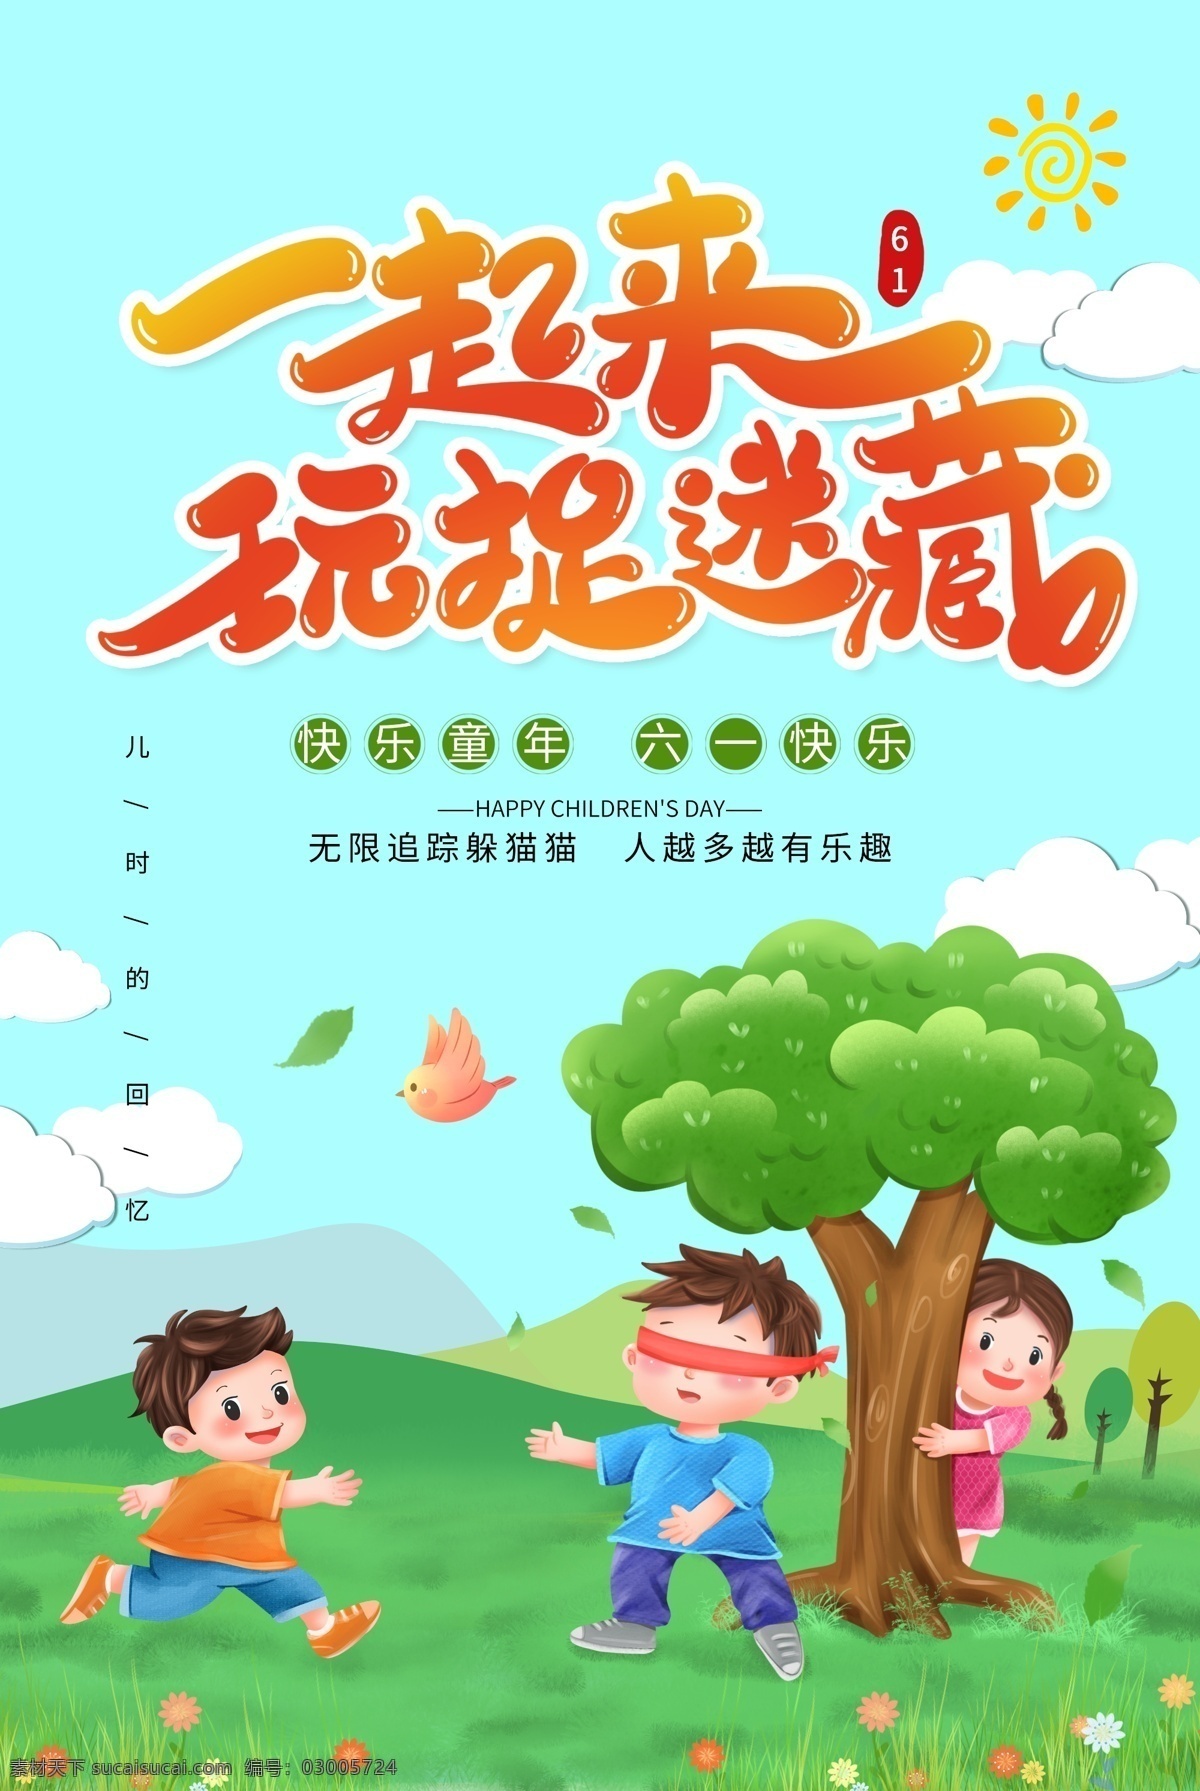 61 儿童节 一起 捉迷藏 海报 一起捉迷藏 模板 61儿童节